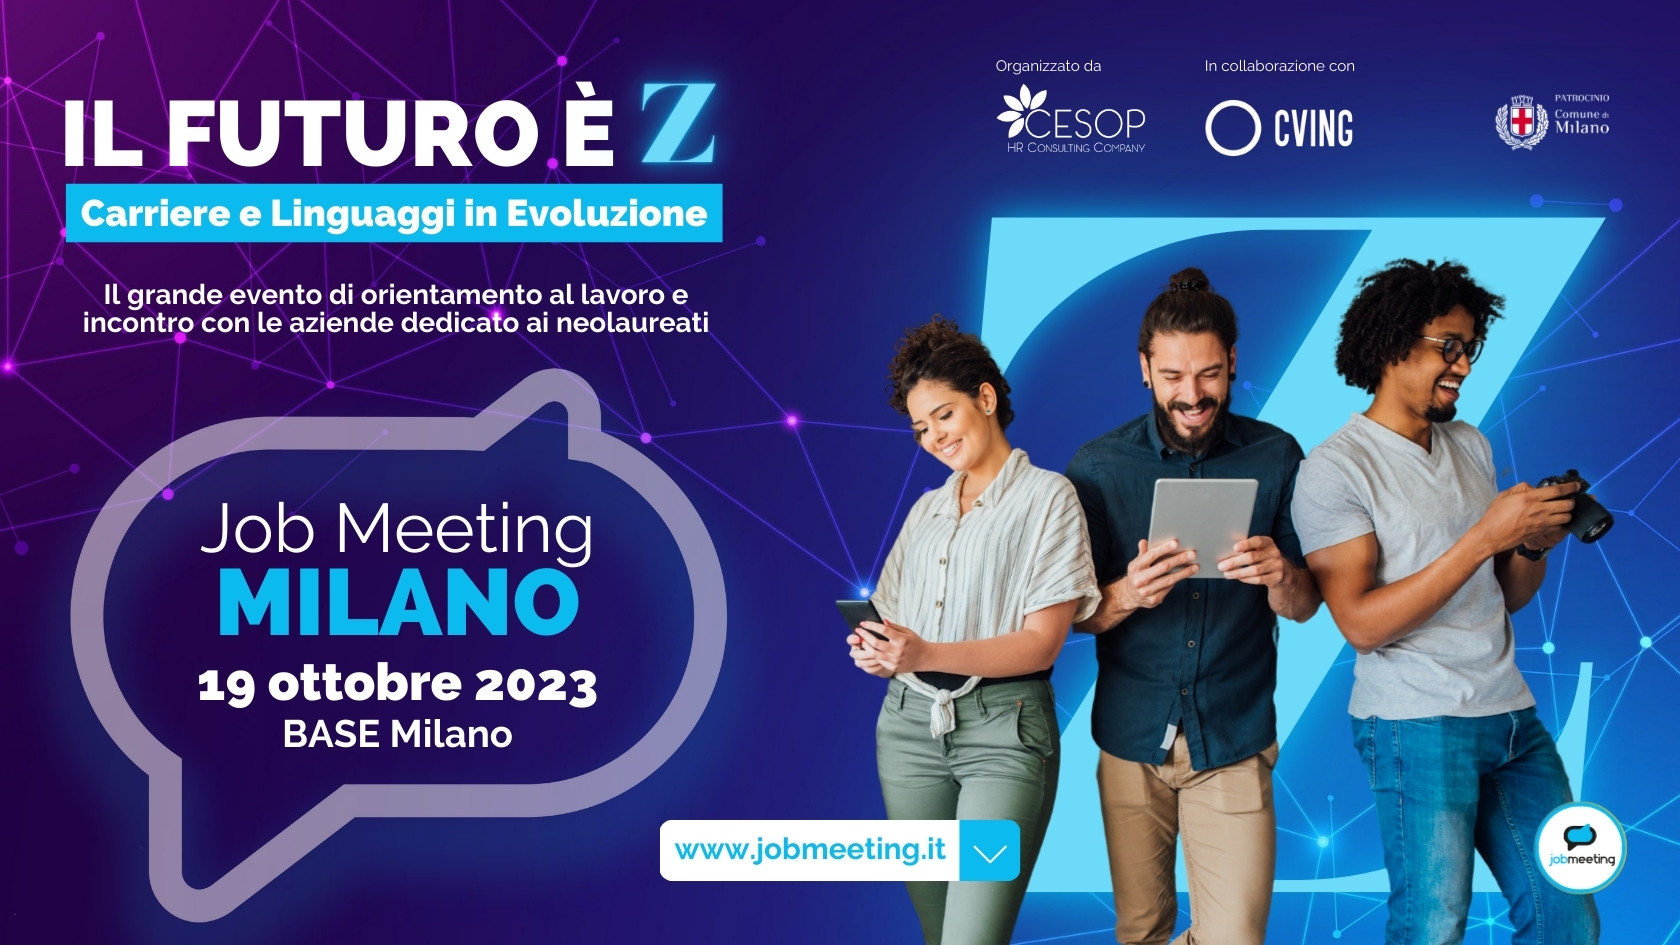 IL FUTURO È Z: Carriere e Linguaggi in Evoluzione. Il 19 ottobre partecipa al Job Meeting Milano!